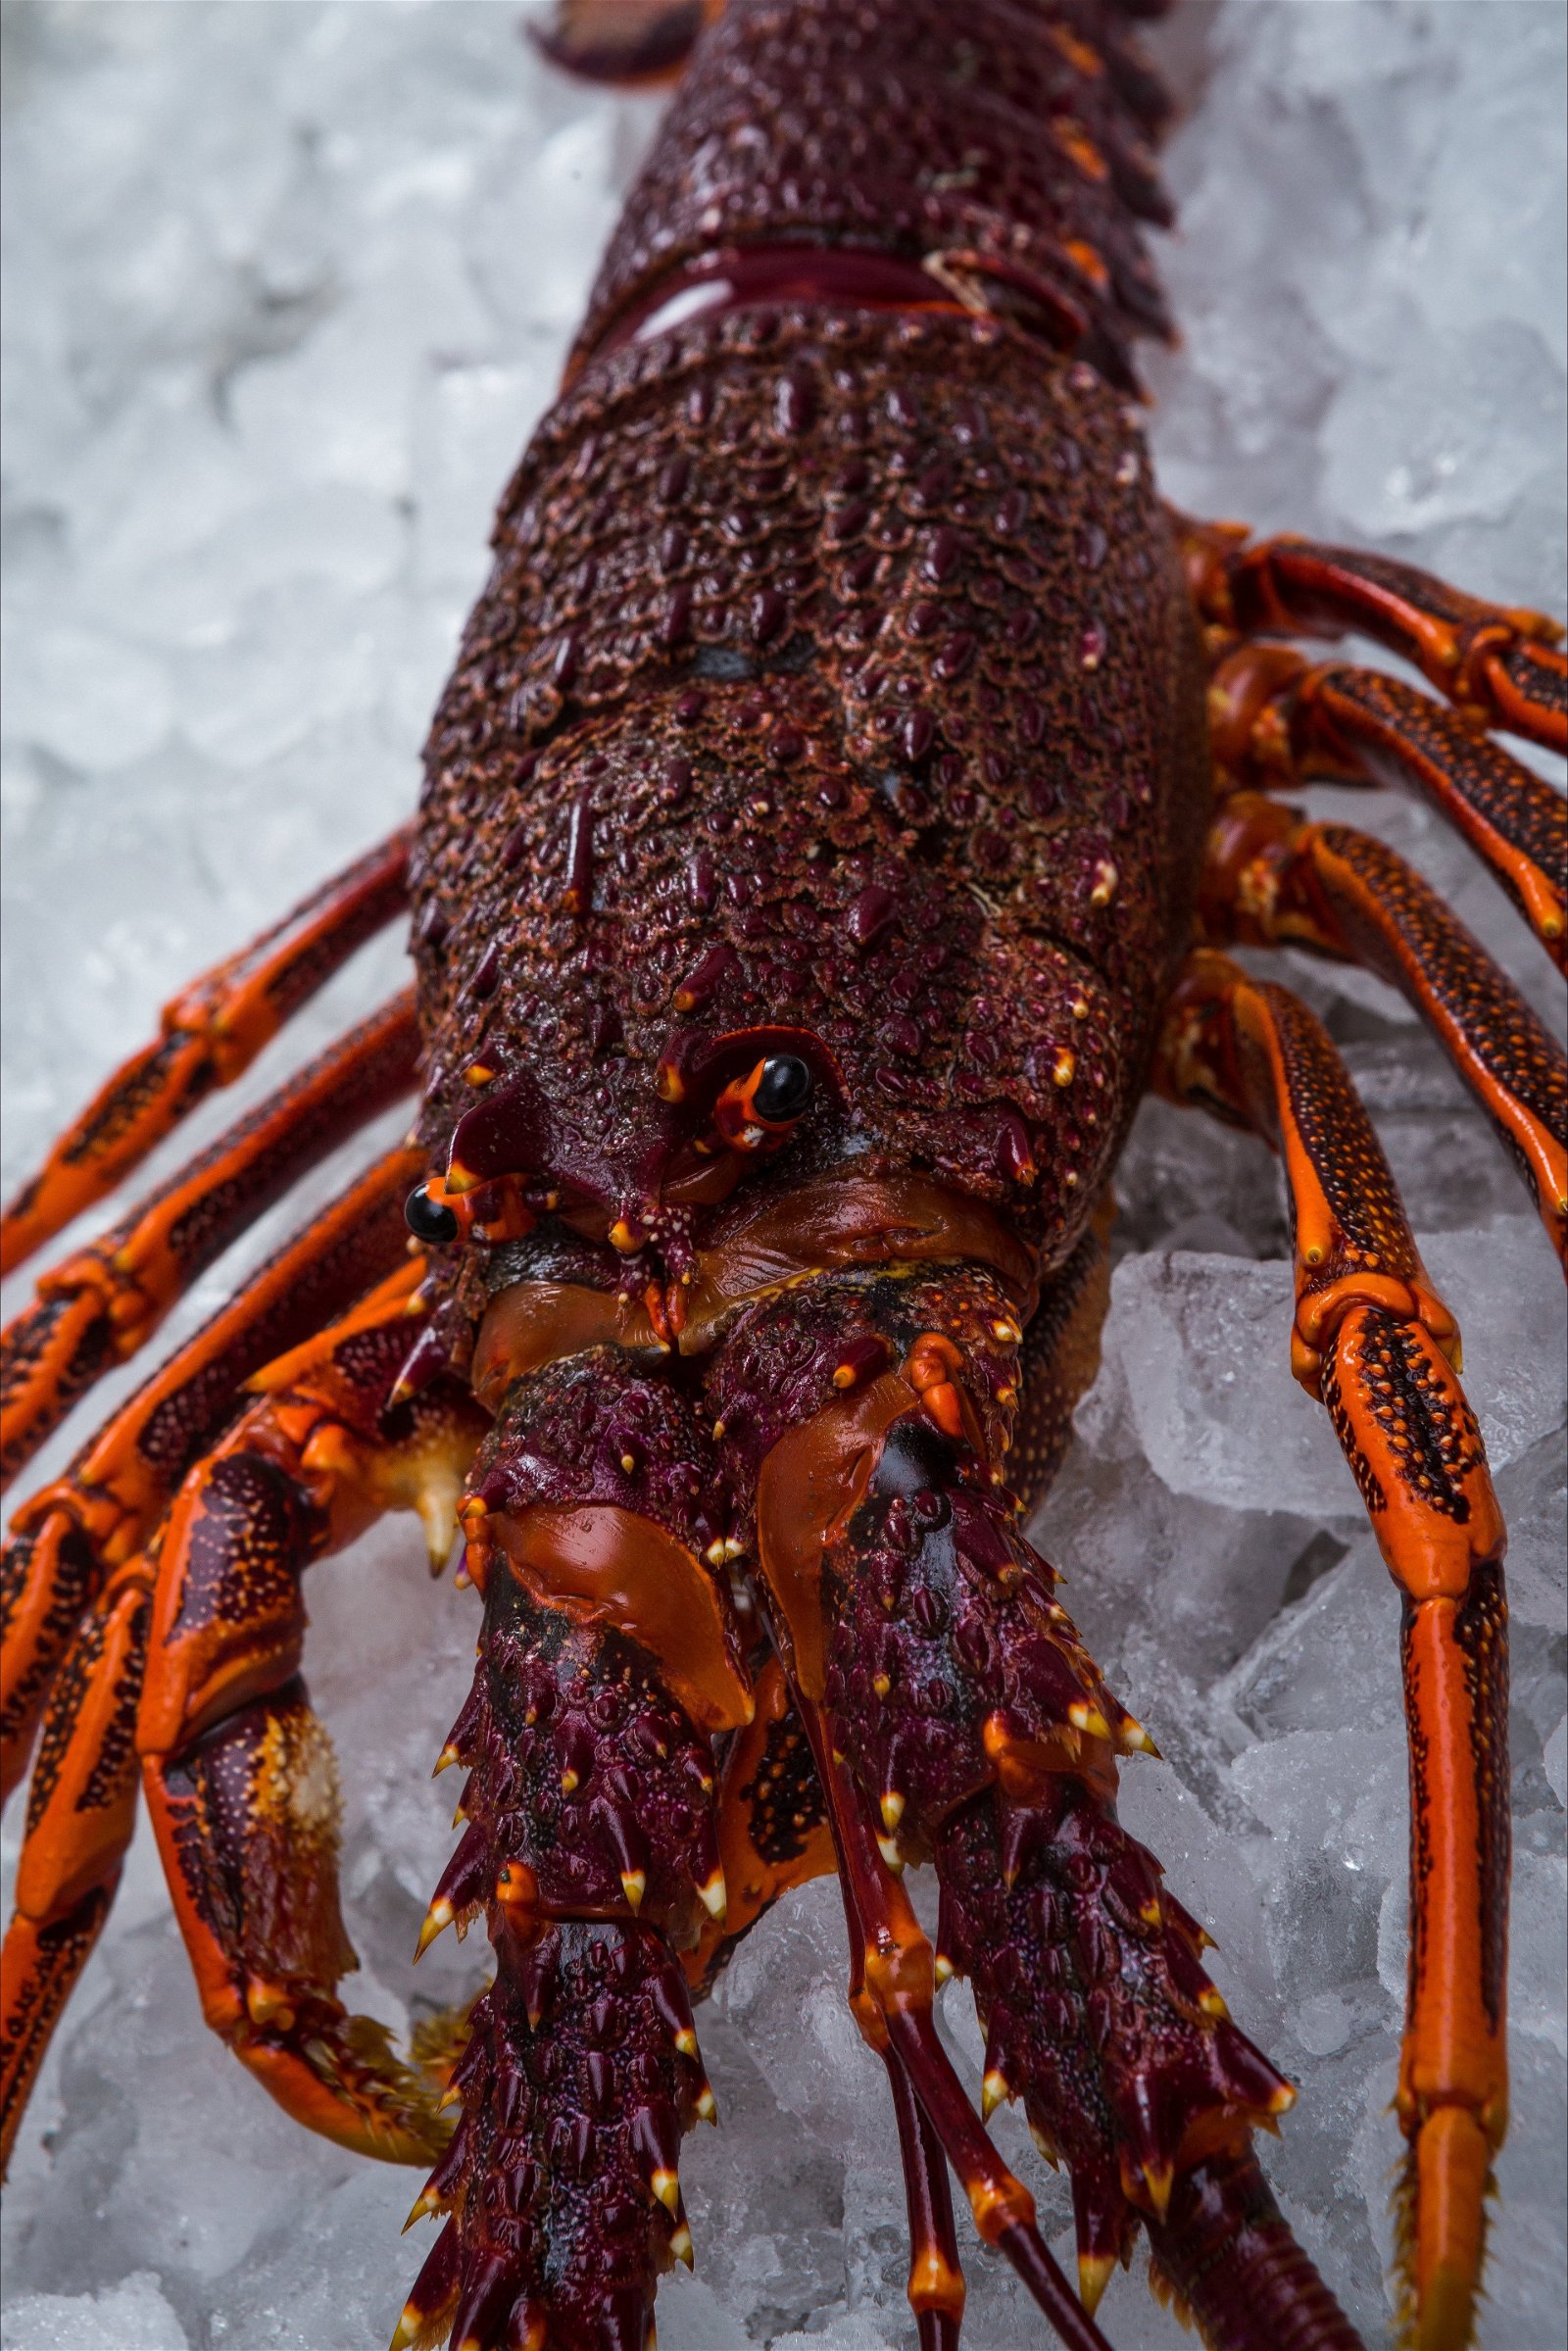 Lobster Shack Tasmania - Broome Tourism